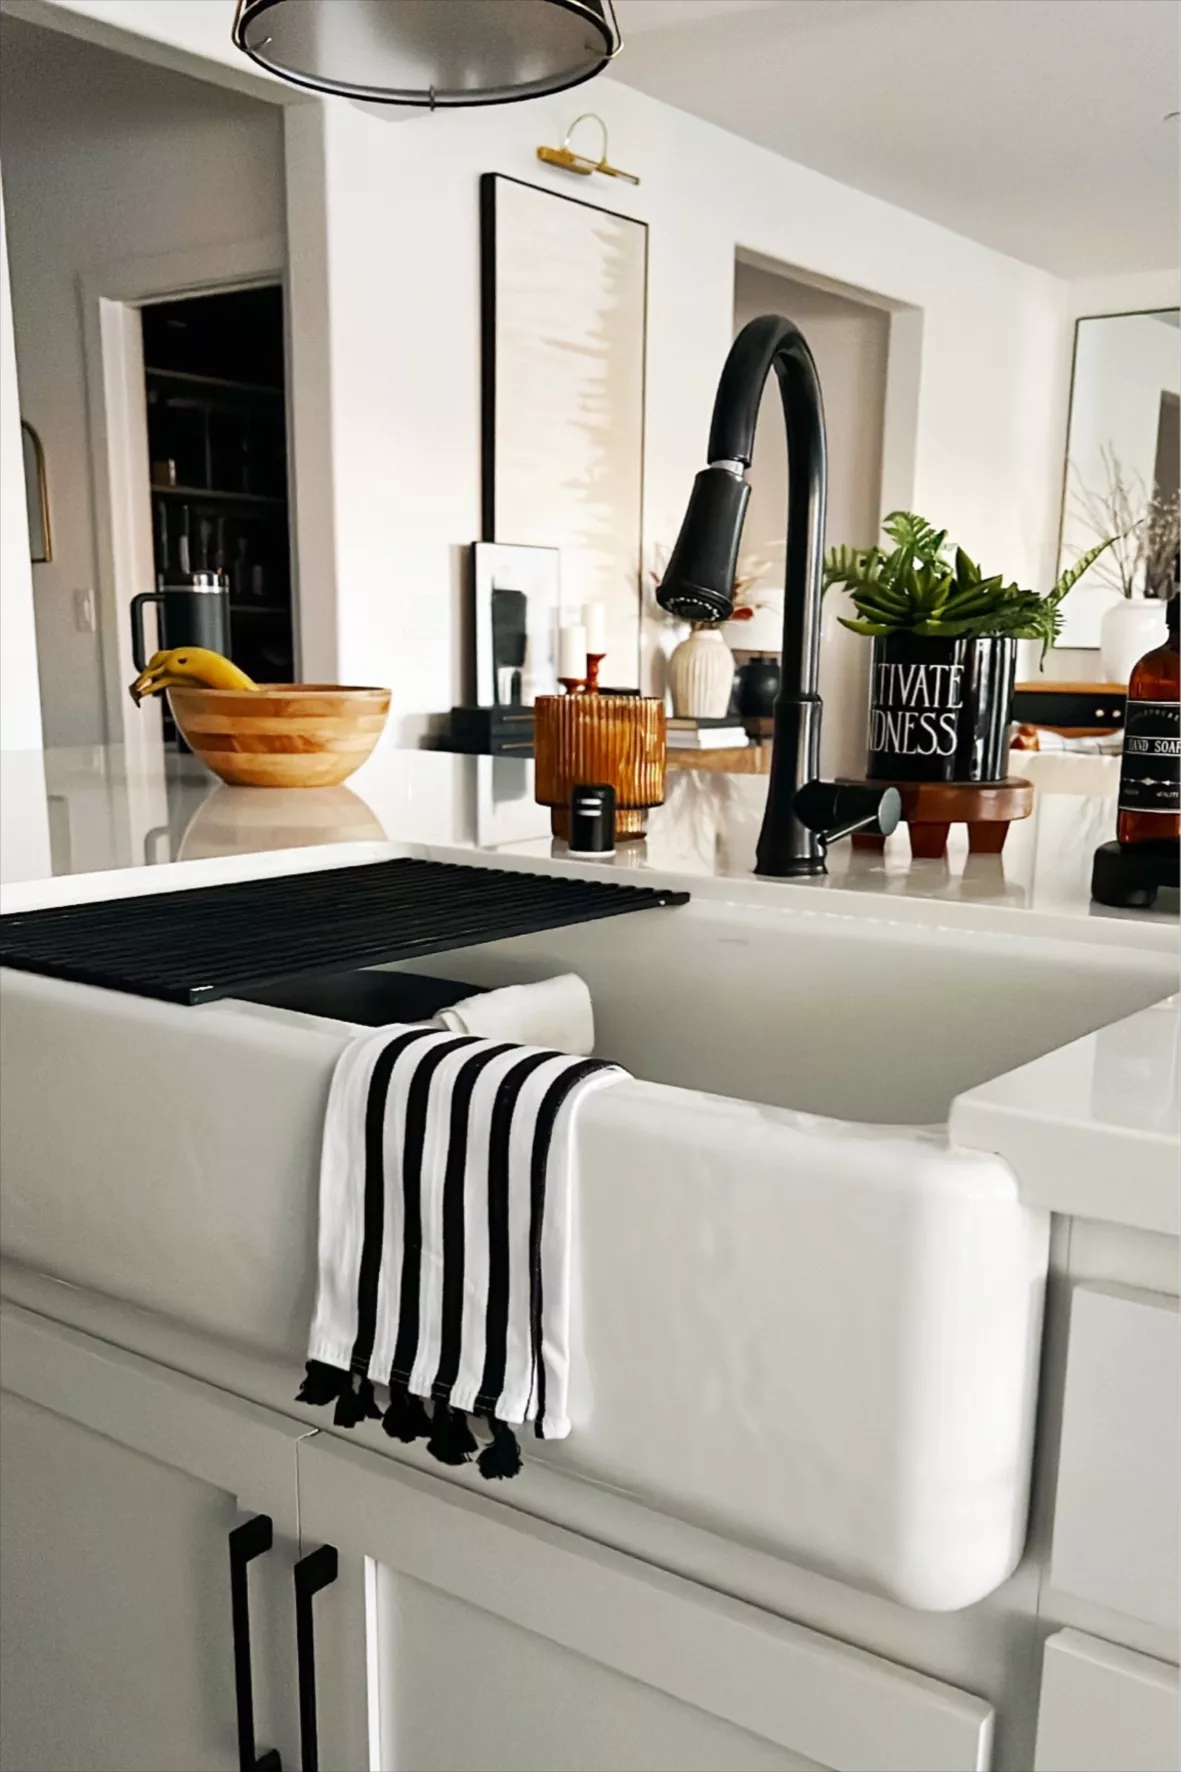 Clovis Black Edge Cotton Tea Kitchen Dish Towels, Set of 2 + Reviews